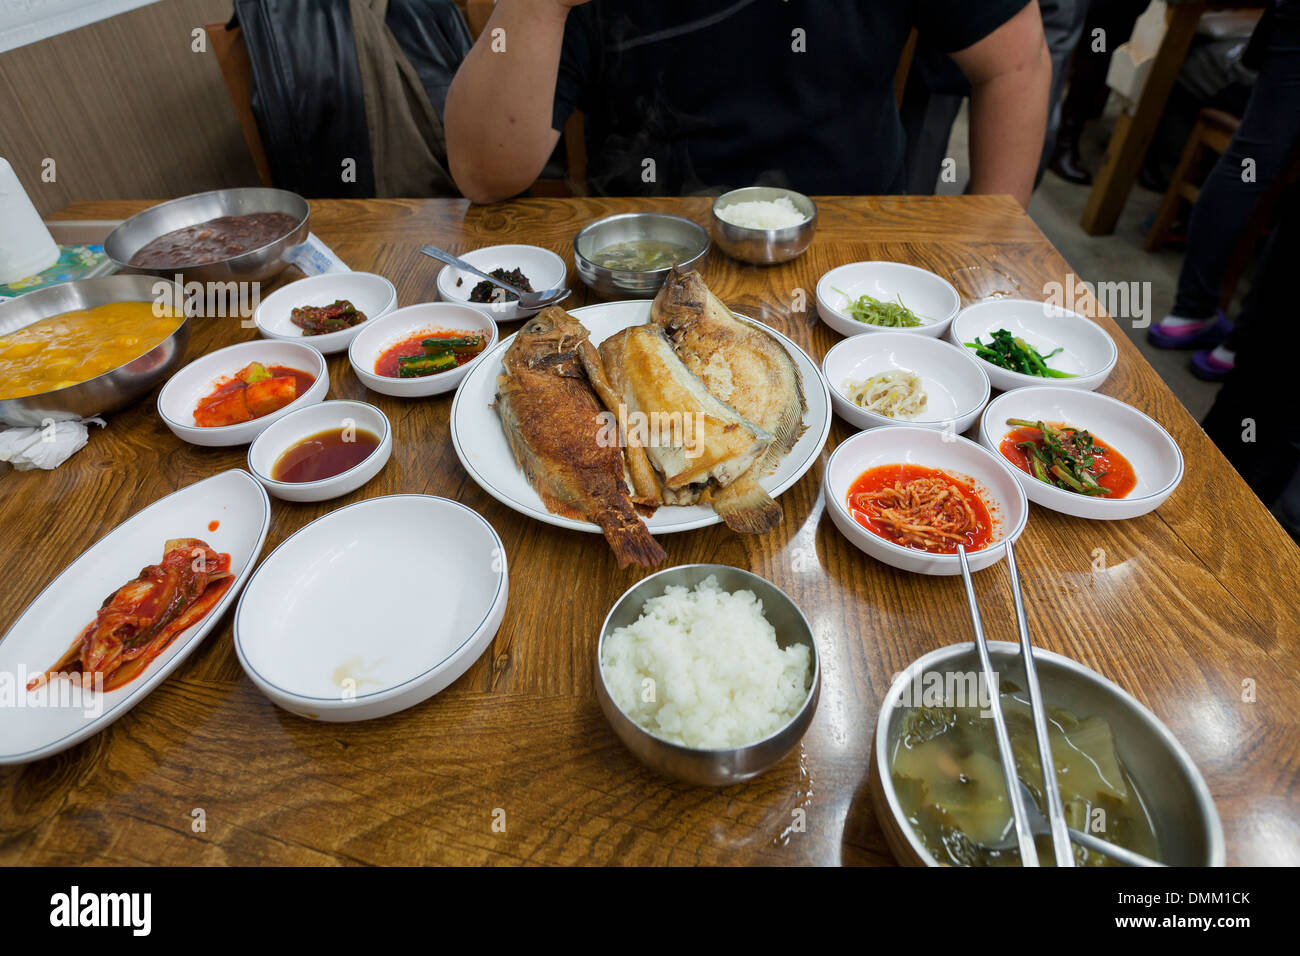 Koreanische gebratenen Fisch-Mahlzeit und Beilagen am Tisch - Südkorea Stockfoto